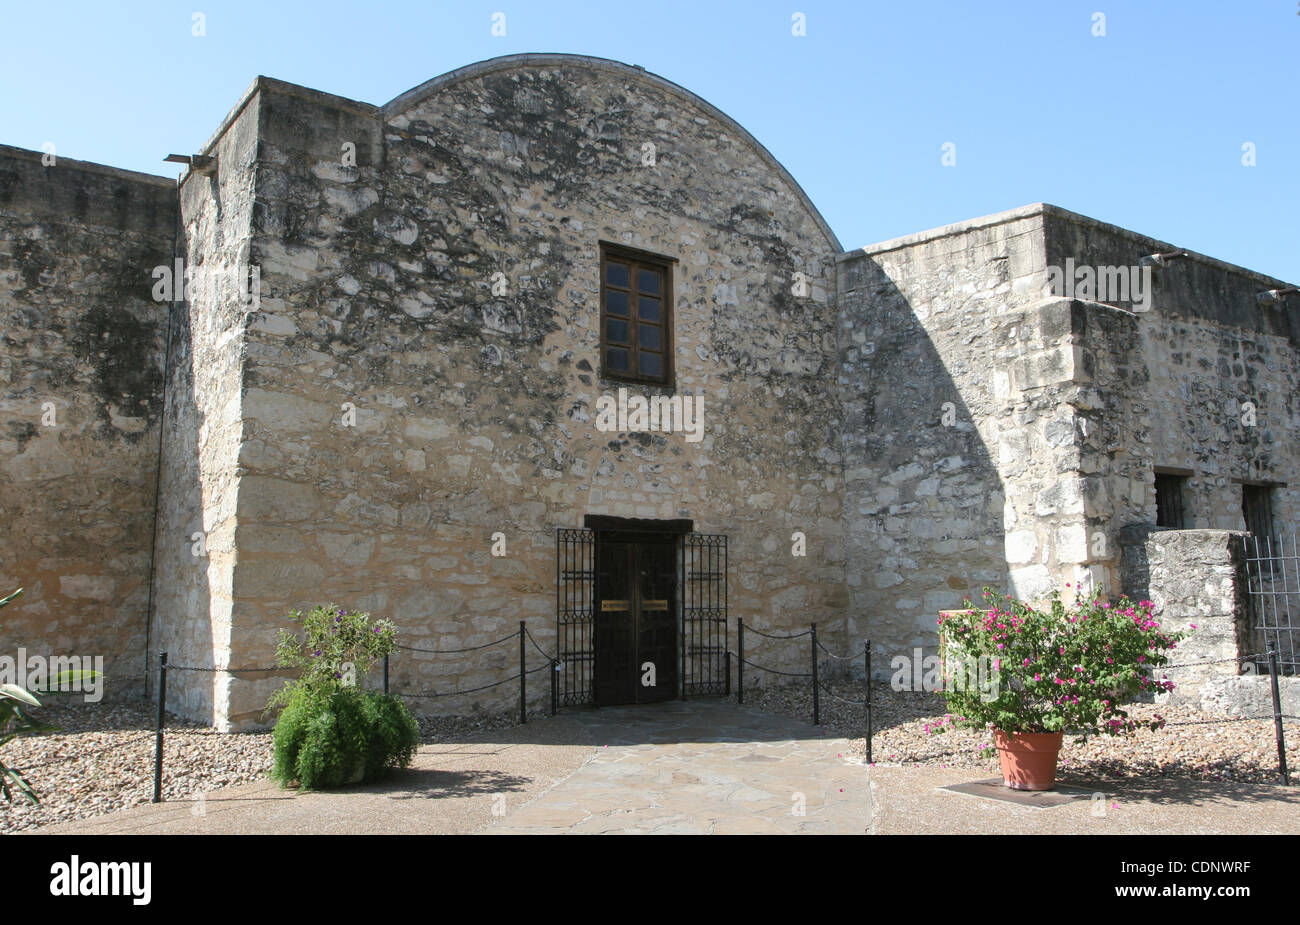 Sept 2005 - San Antonio, Texas, États-Unis - Photos de l'Alamo fort in San Antonio. La bataille de l'Alamo qui a eu lieu du 23 février au 6 mars 1836 a été un événement charnière dans la révolution du Texas. (Crédit Image : ©/ZUMAPRESS.com) Blevins génique Banque D'Images